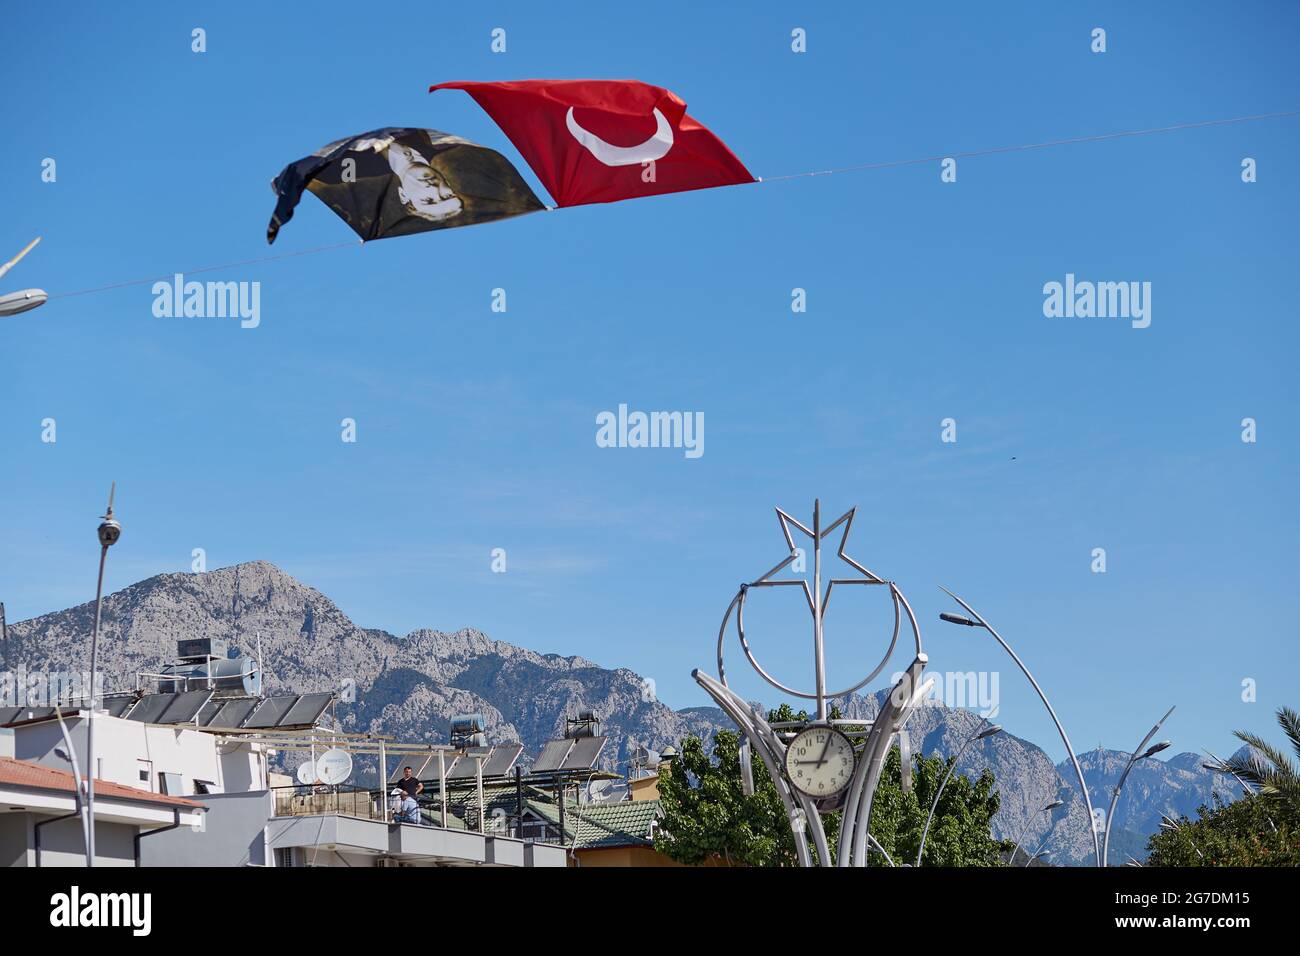 Kemer, Turquía - 24 de mayo de 2021: Día Nacional en Turquía. Bandera turca y bandera del presidente sobre fondo del cielo azul. Fotografías de alta calidad Foto de stock